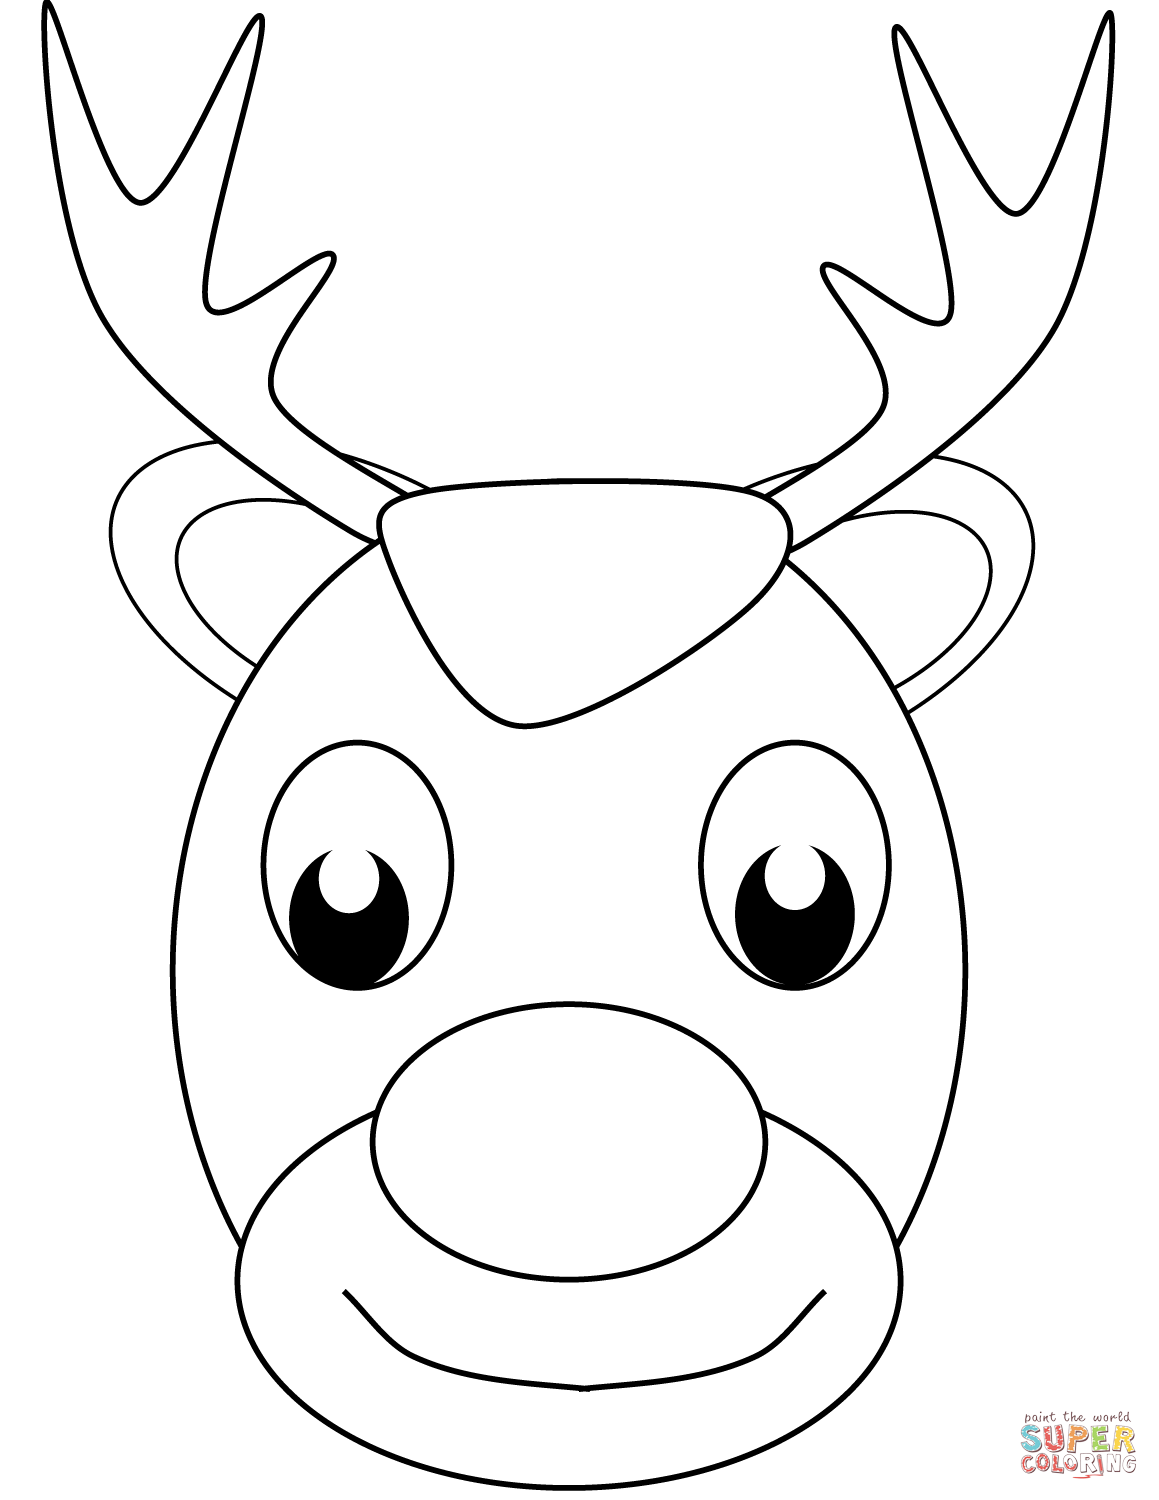 Reindeer Head Coloring Pages Printable at Free